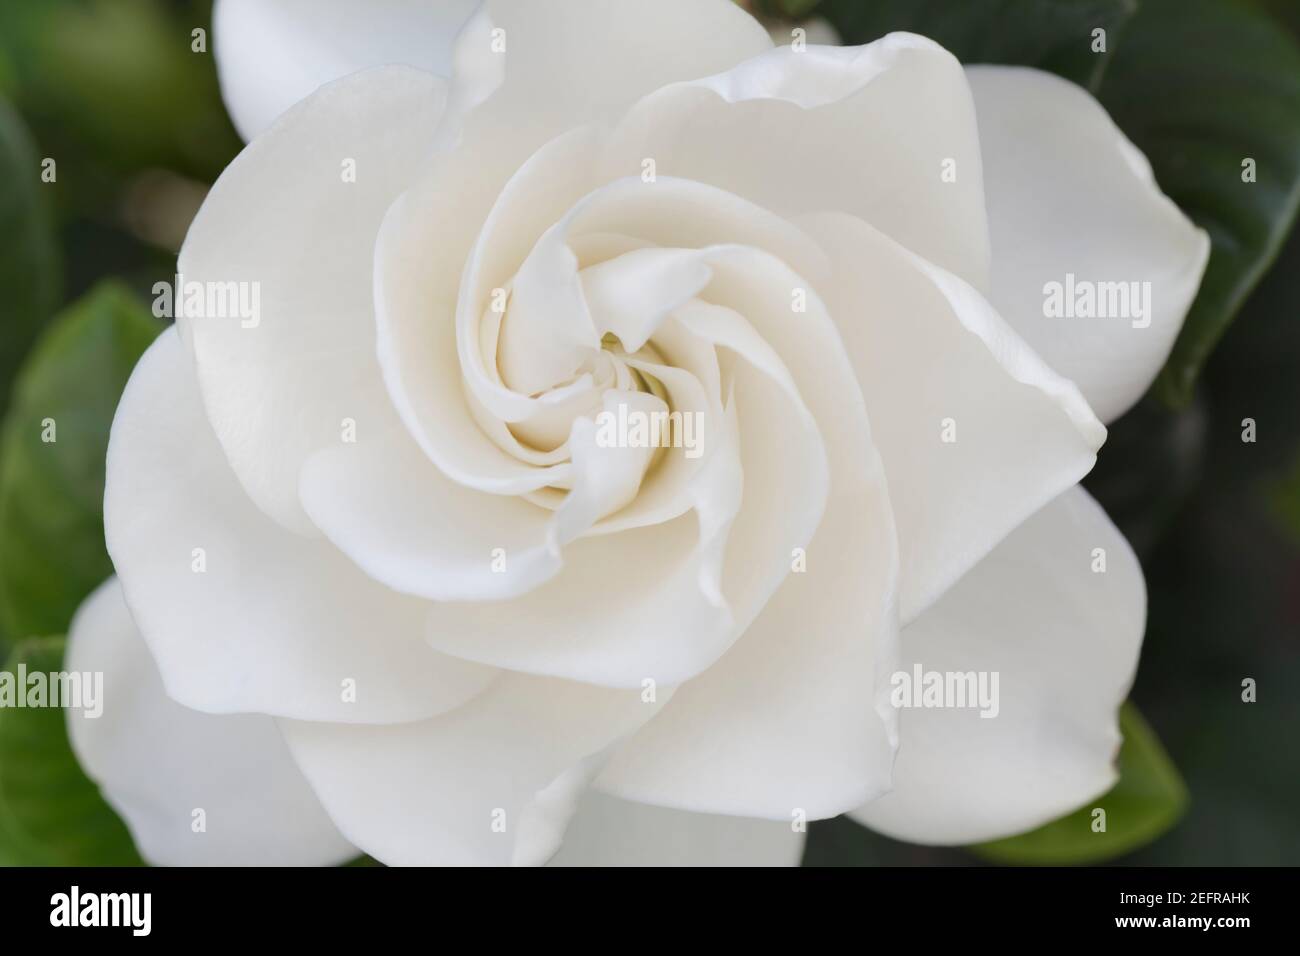 Gardenia Jasminoides, closeup of white flower on a plant Stock Photo